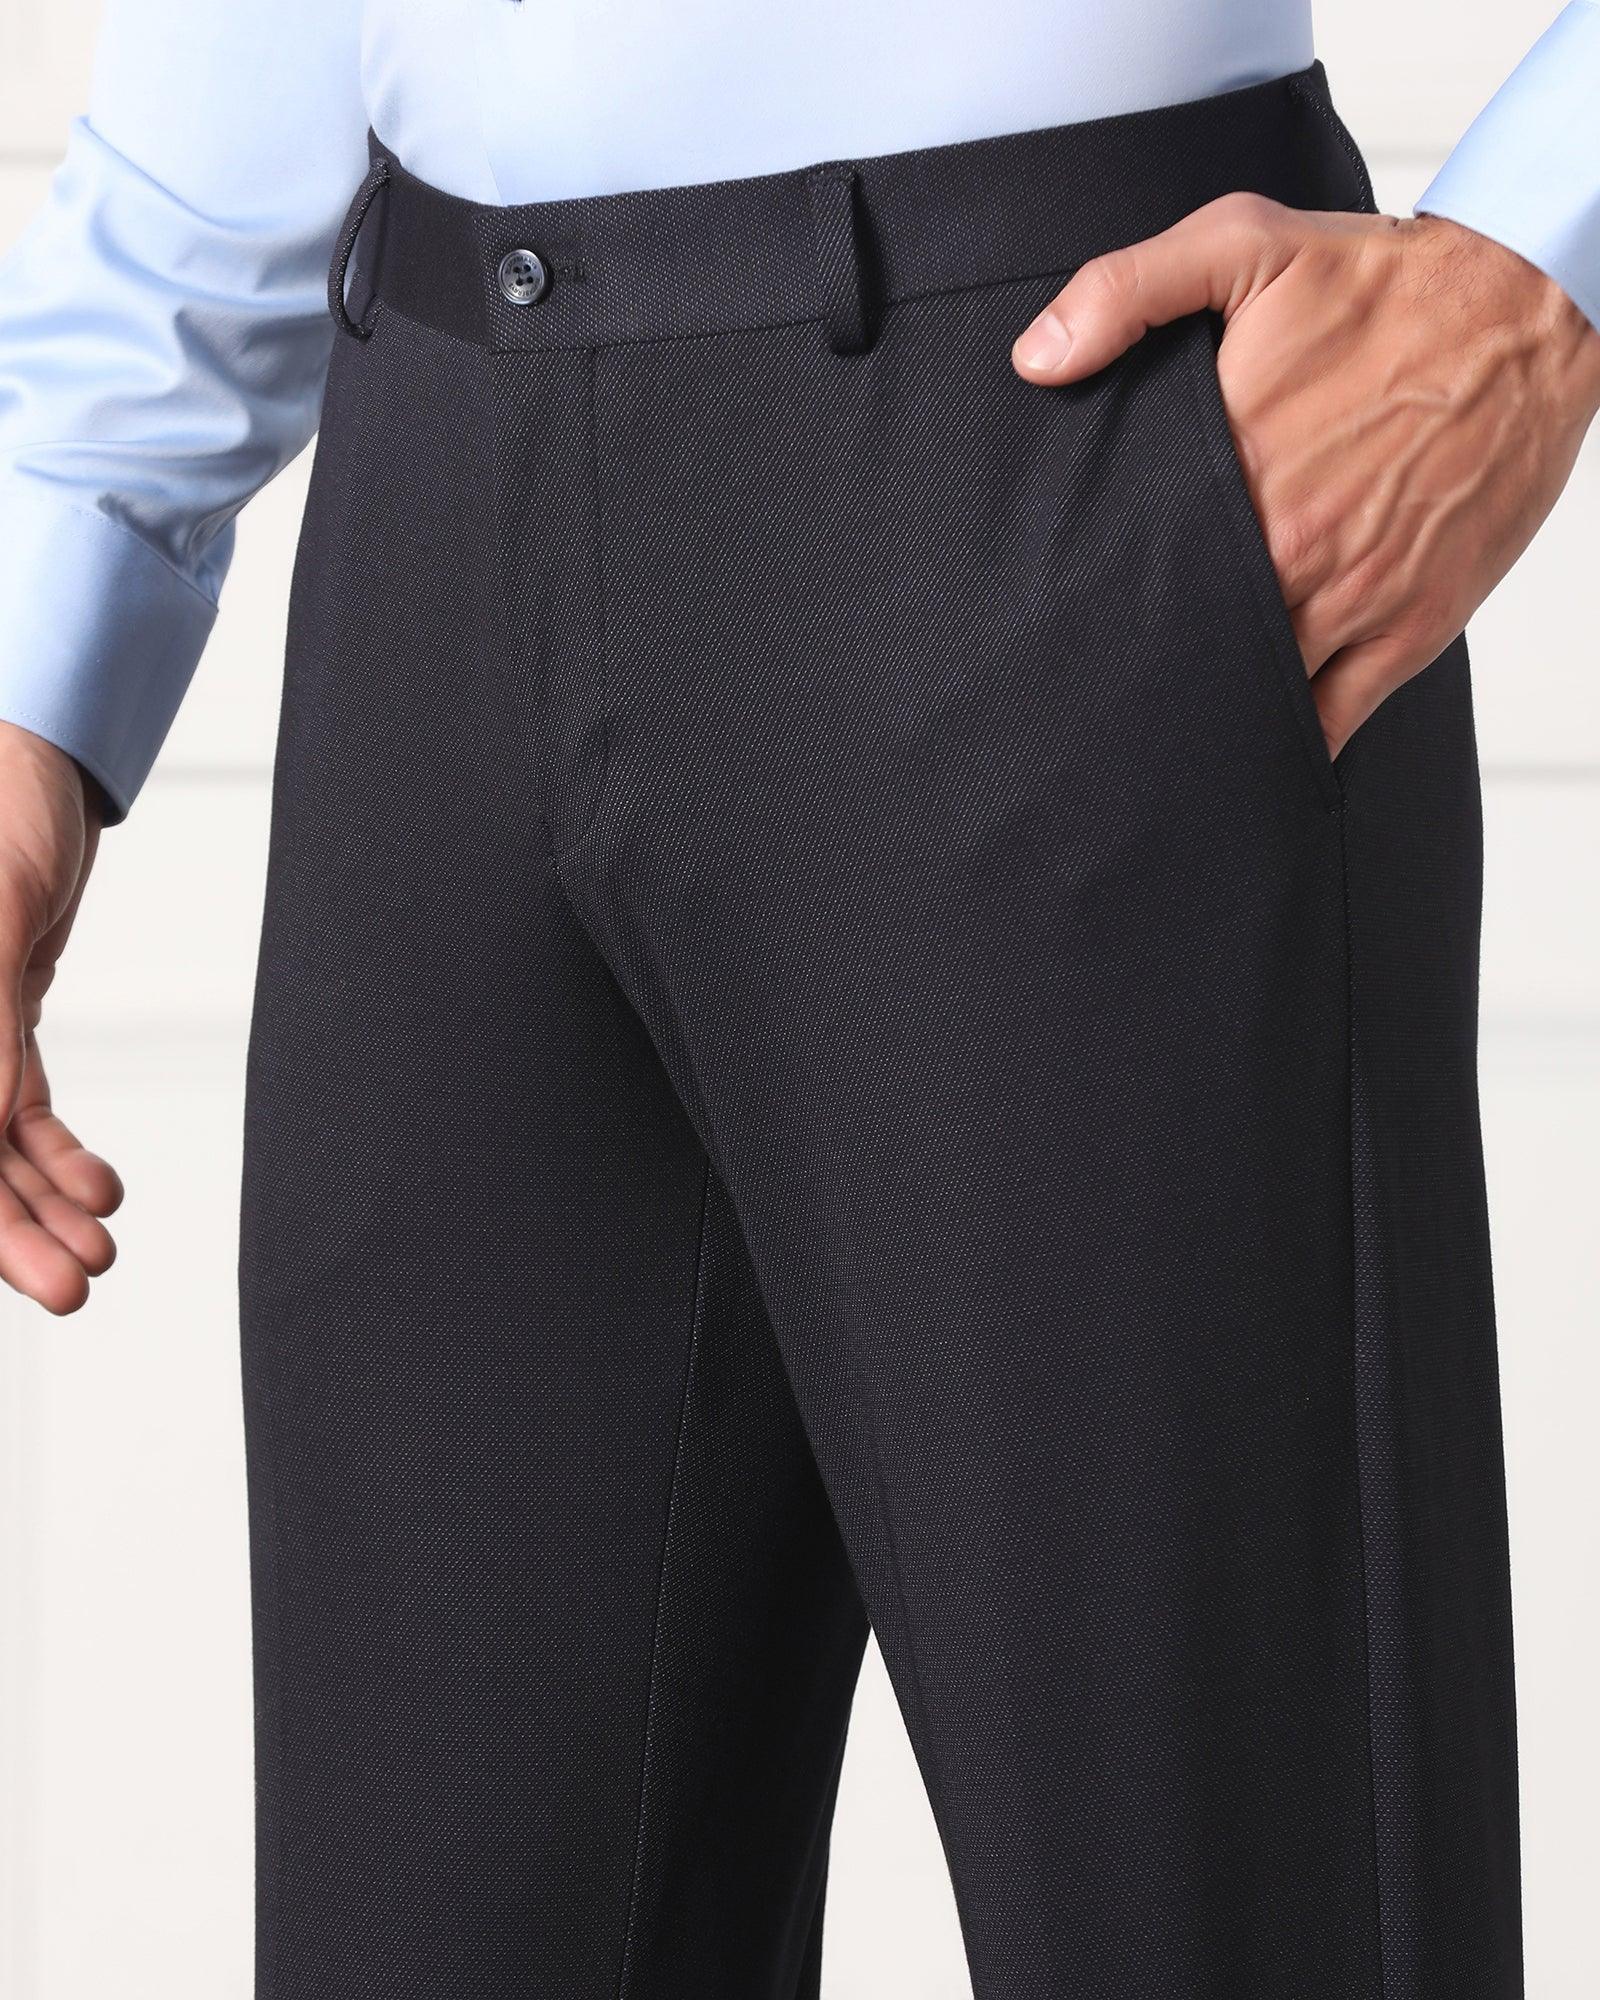 Nike APS Men's Therma-FIT Versatile Trousers. Nike LU